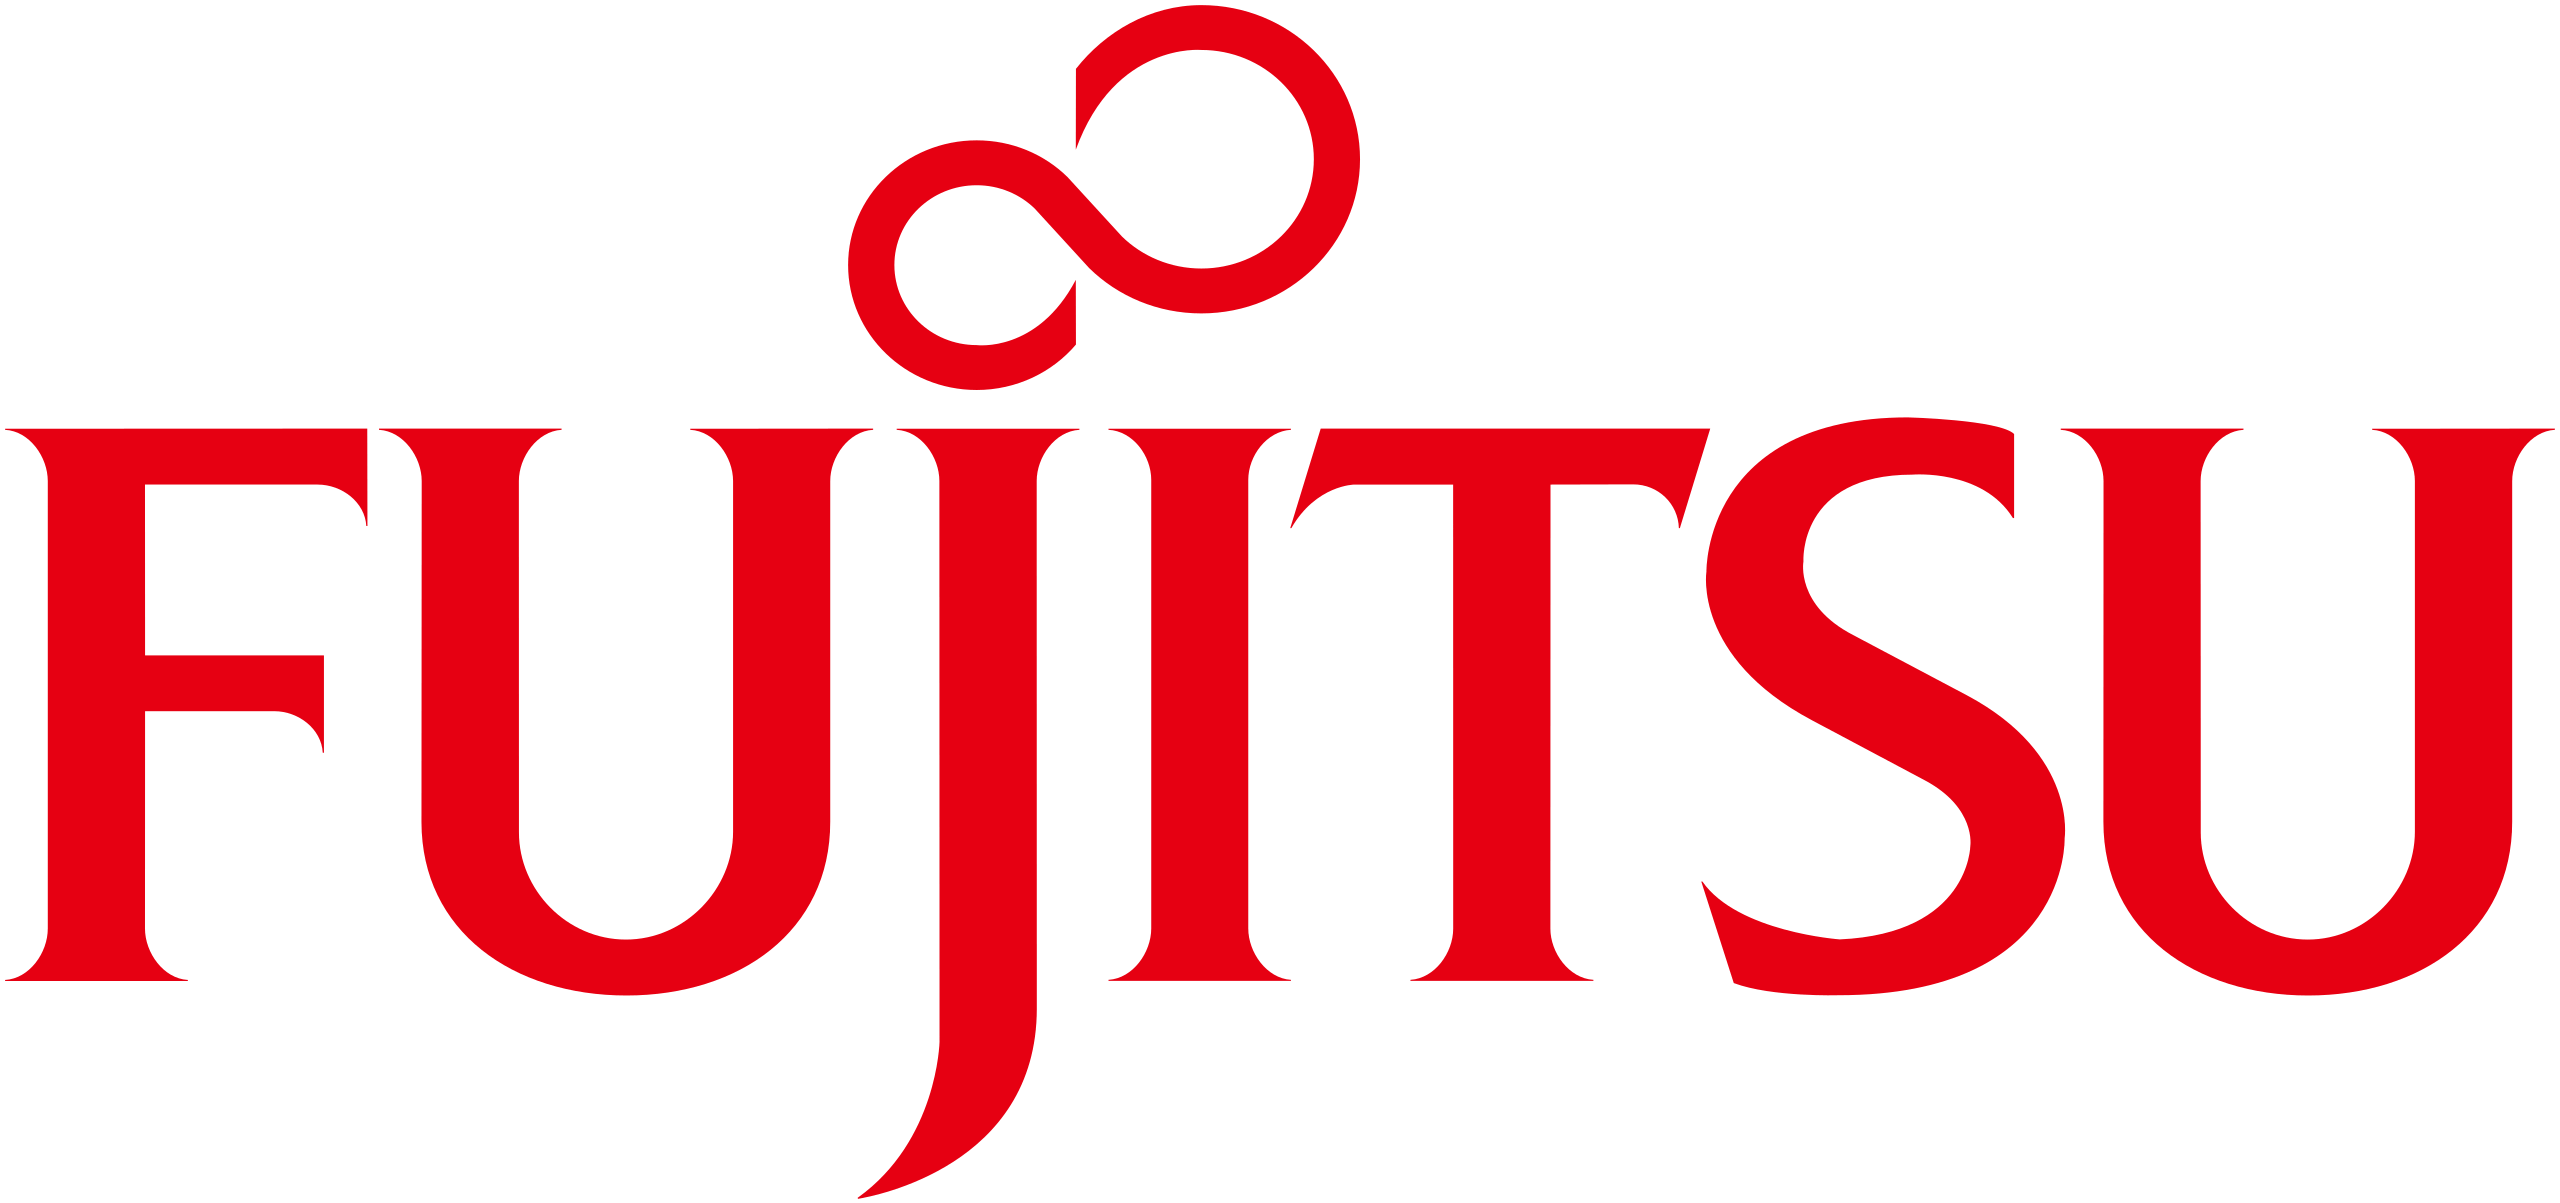 Red Fujitsu logo